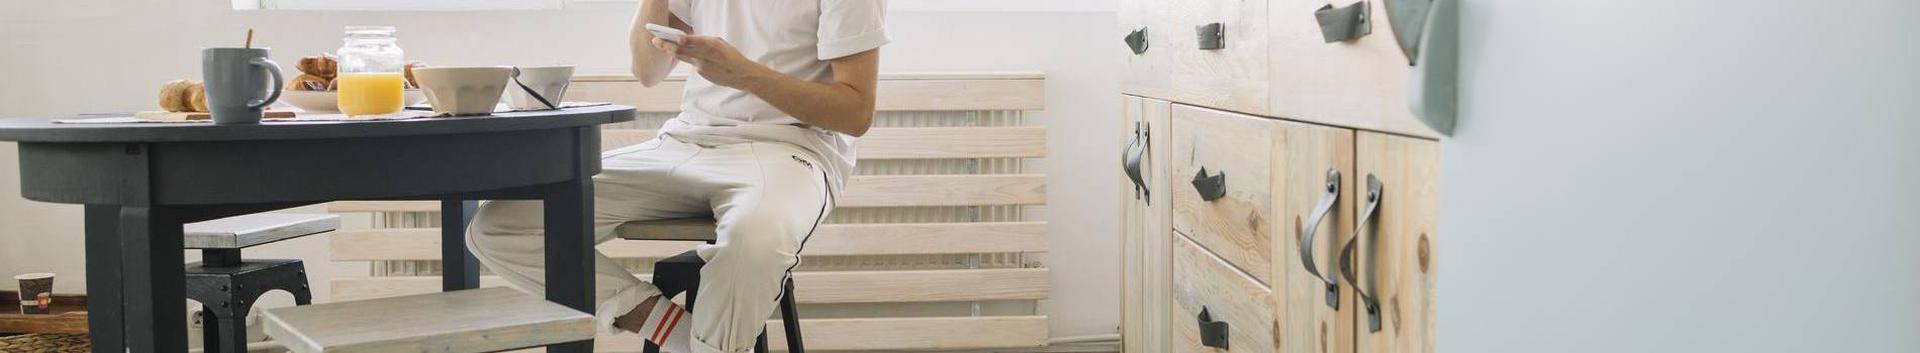 Võru Seeder on 25+ aastase kogemusega Eesti mööblitootja. Peamiseks toodanguks on erinev pehmemööbel - diivanid, tugitoolid, toolid.